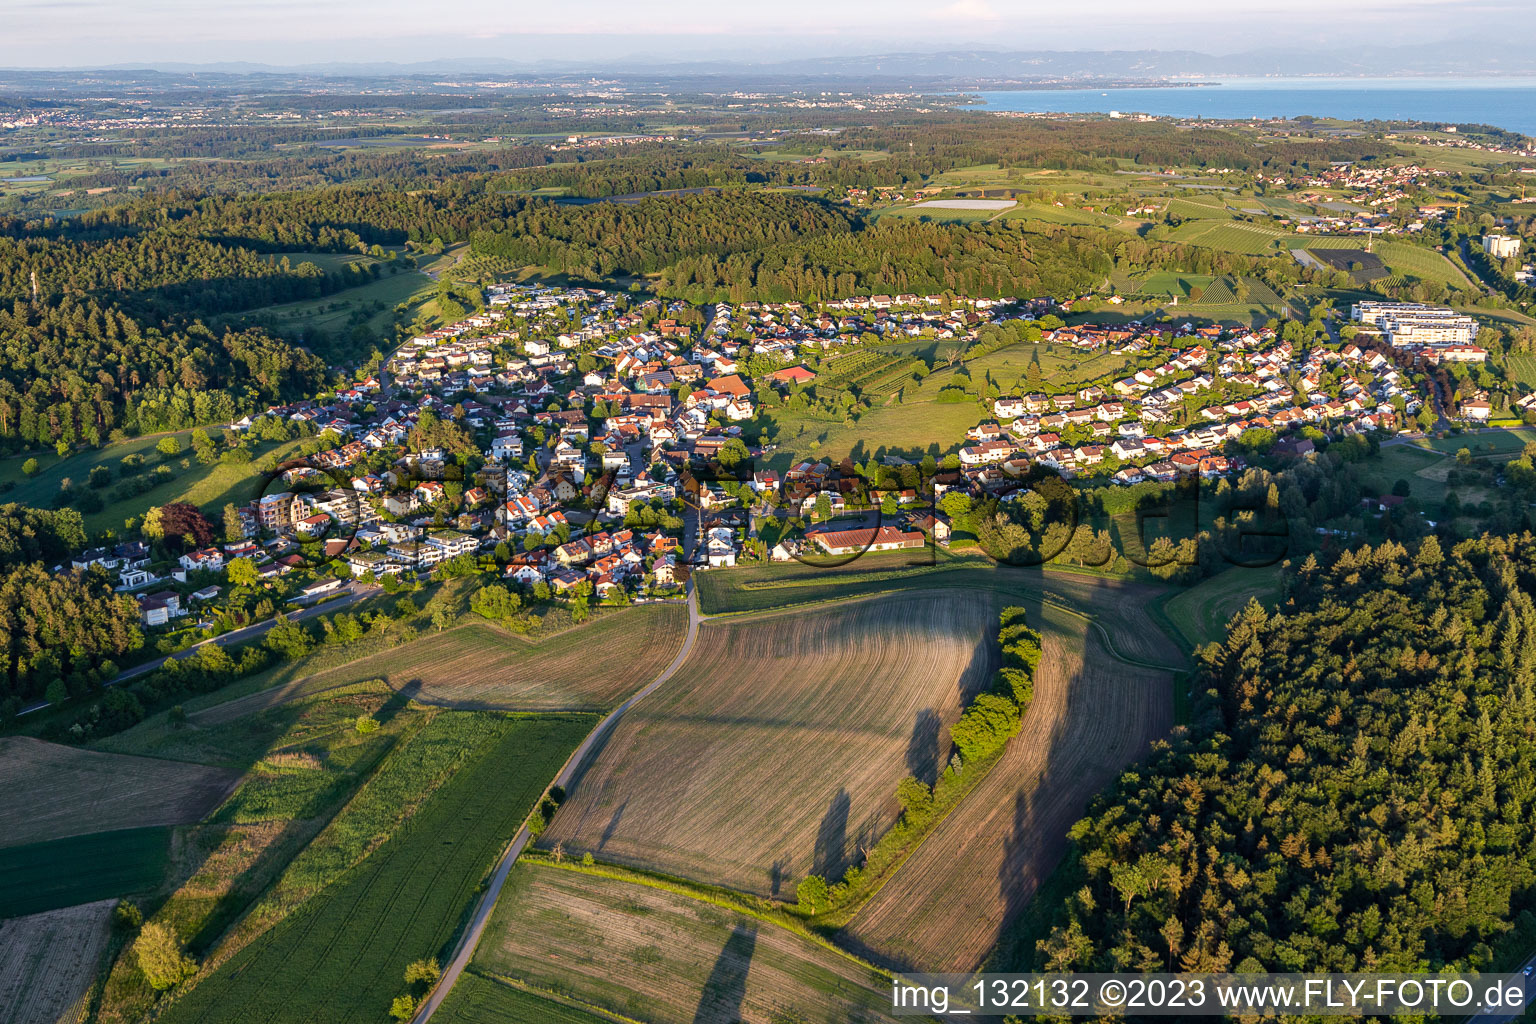 Vue aérienne de Daisendorf à Meersburg dans le département Bade-Wurtemberg, Allemagne